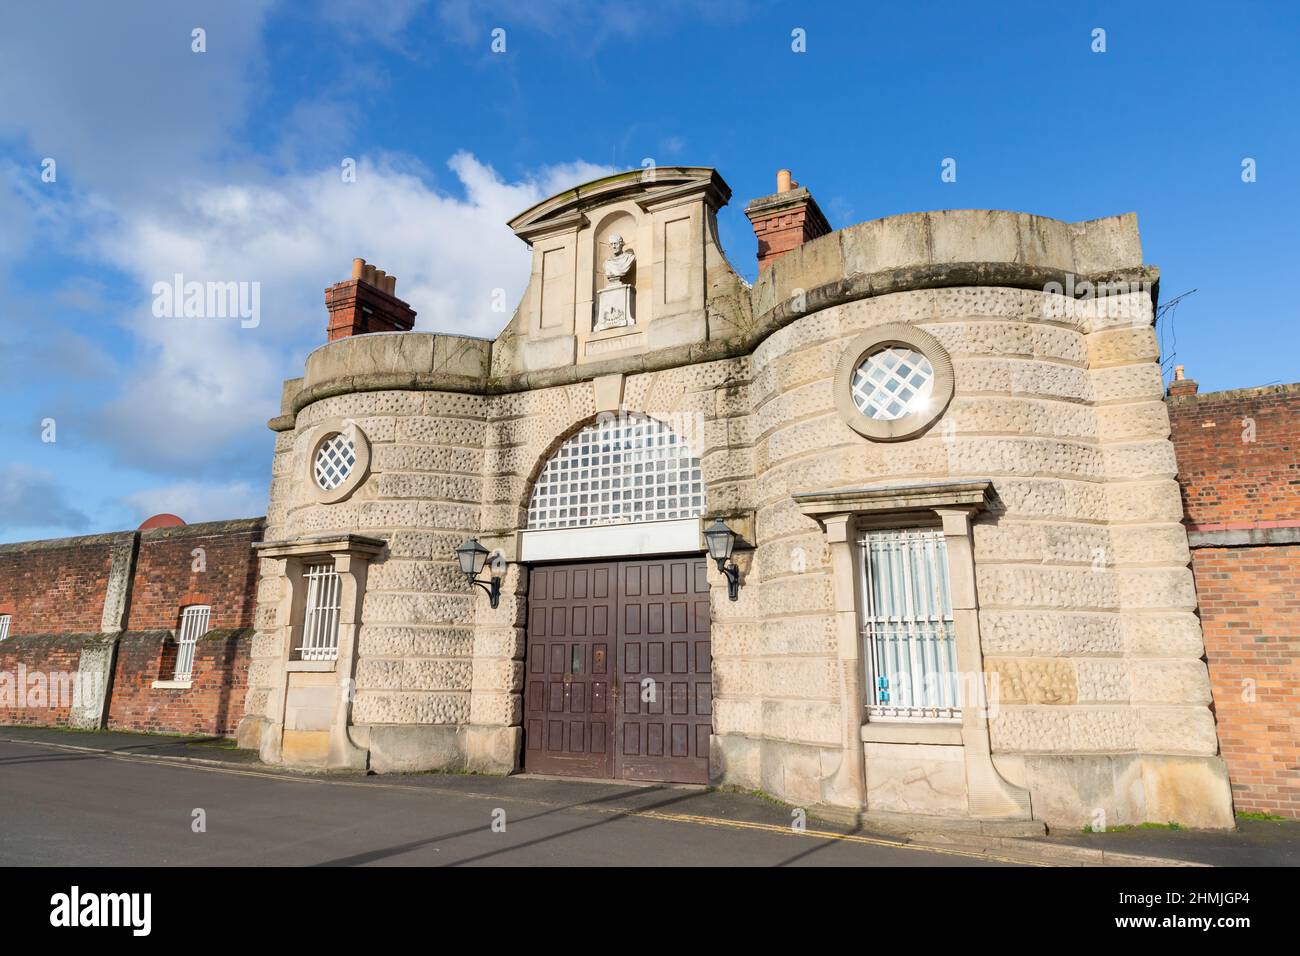 Vordereingang des Gefängnisses Shrewsbury in Shropshire, Großbritannien Stockfoto